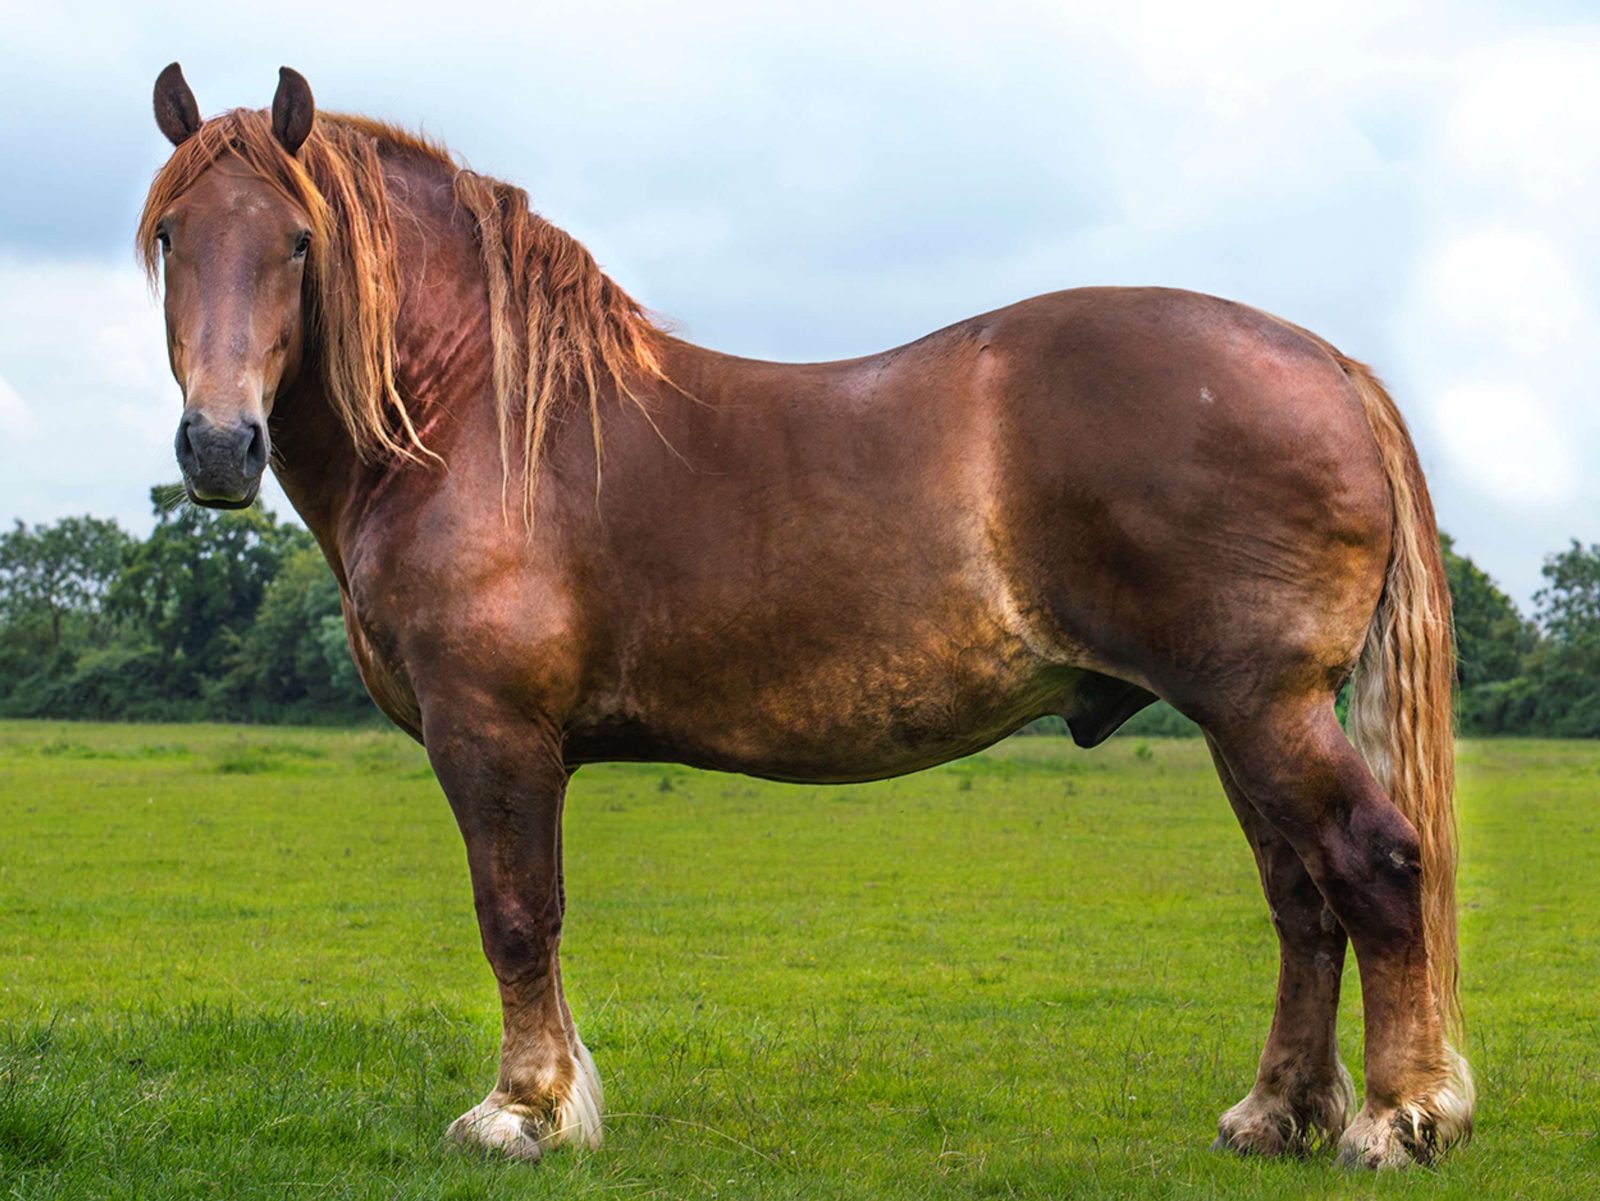 Meu cavalo precisa de alimentação especial? — CompreRural